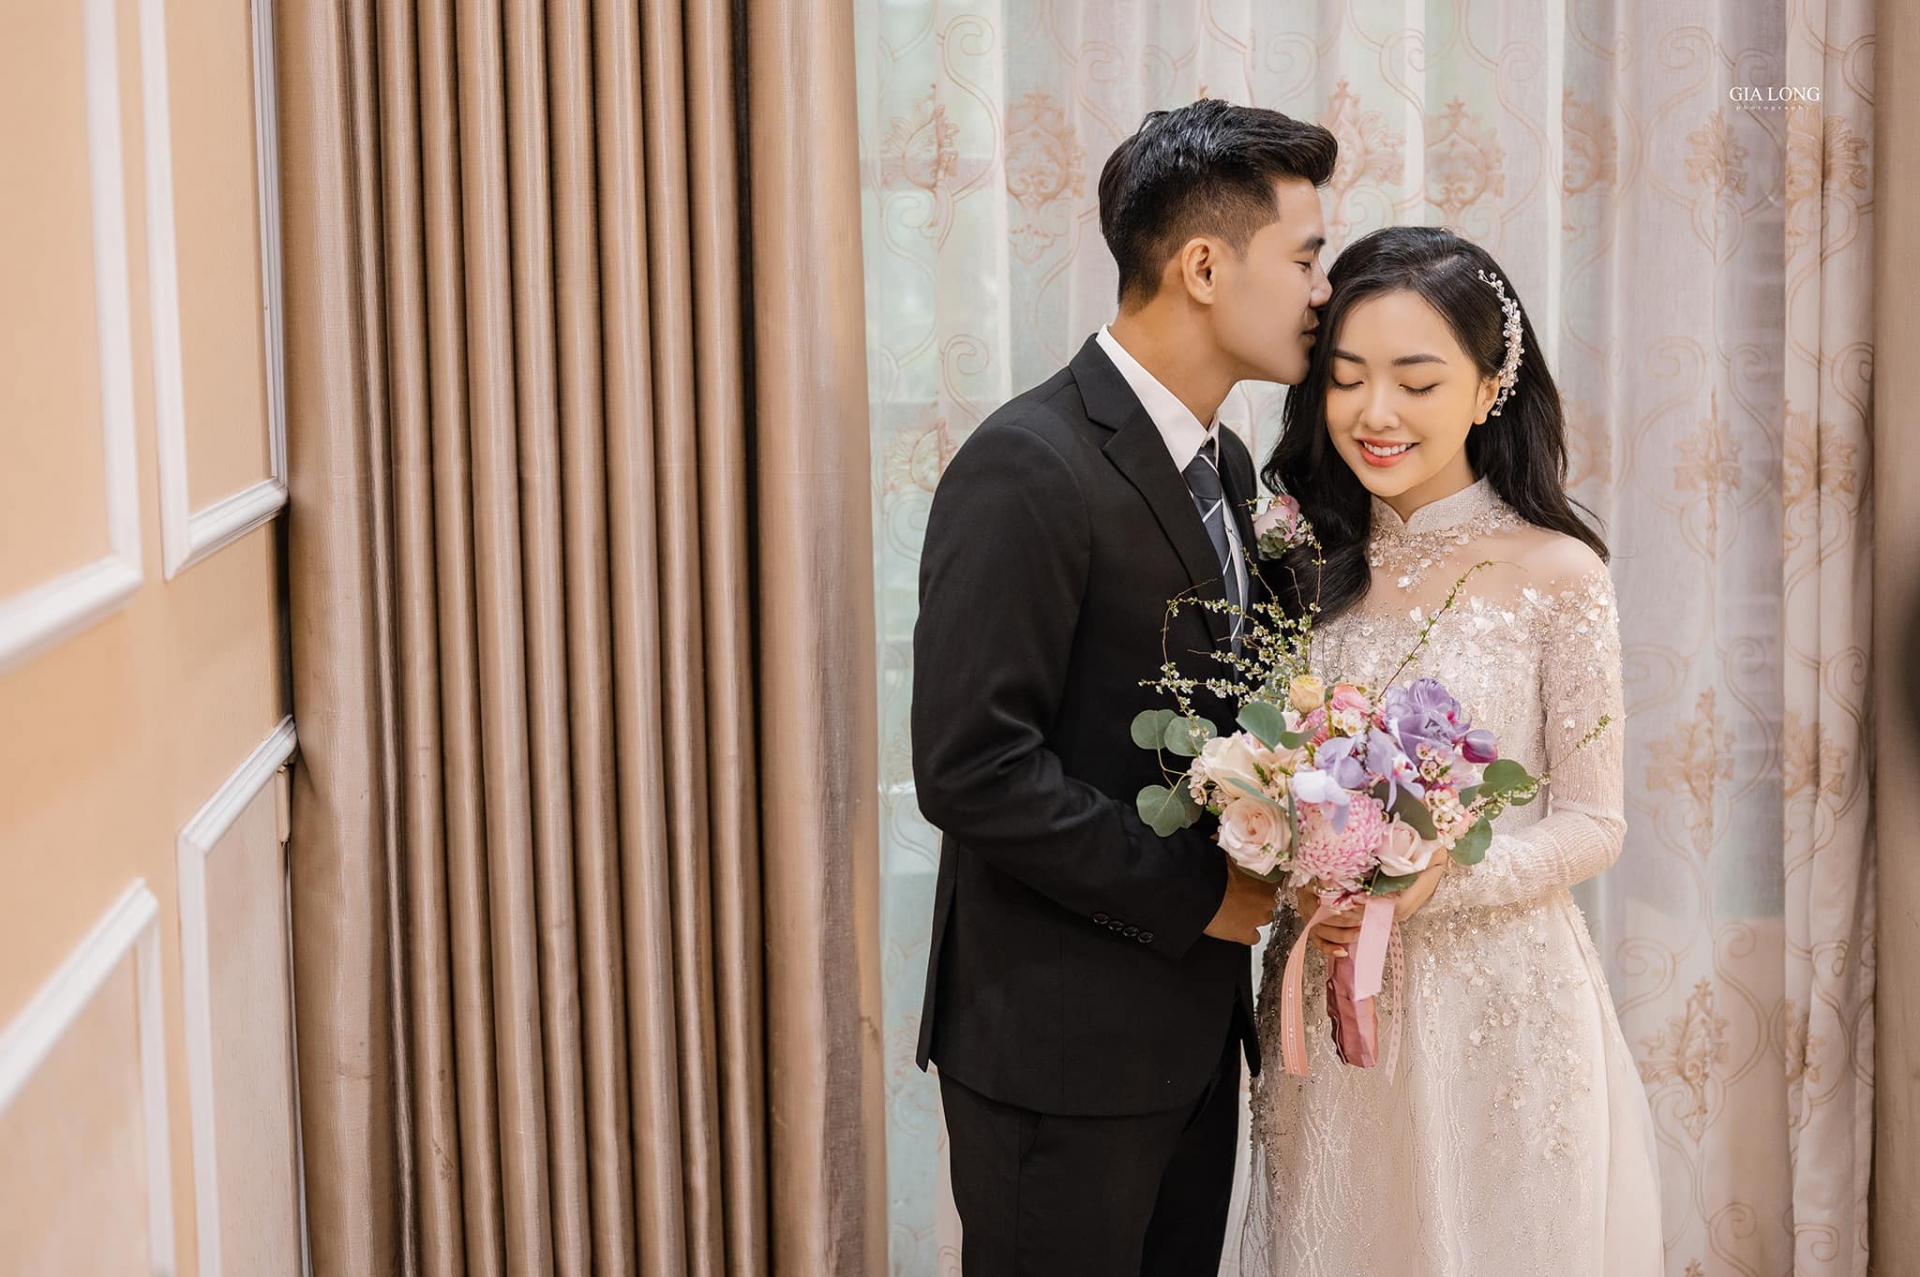 Đức Chinh và Mai Hà Trang chính thức về chung một nhà sau 3 năm tìm hiểu.